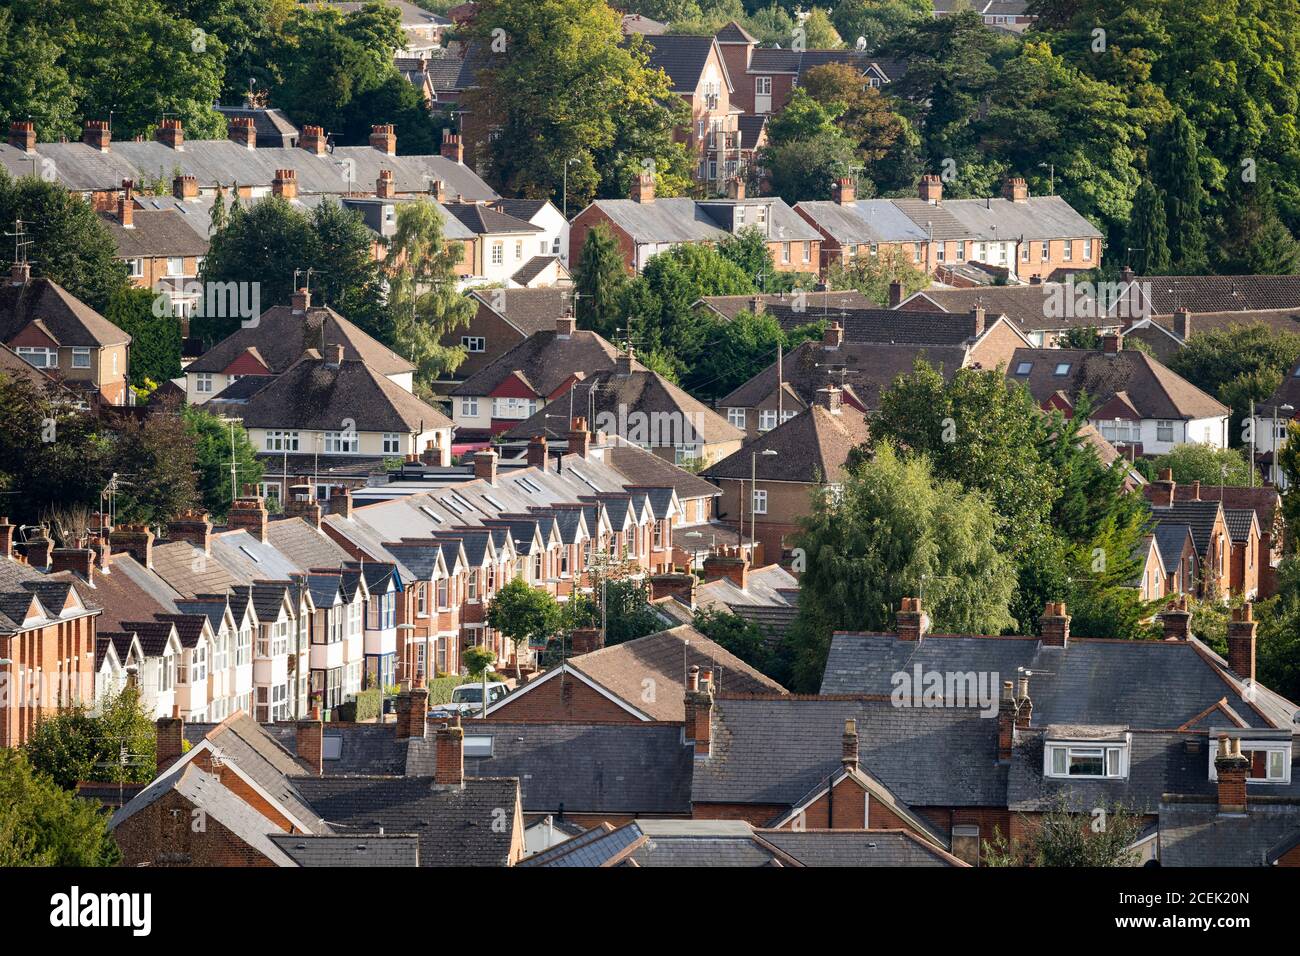 Vue aérienne sur le logement en terrasse victorien à Basingstoke, Royaume-Uni. Thème - marché de location, marché du logement, prix de la maison au Royaume-Uni, propriétaires, location, location Banque D'Images